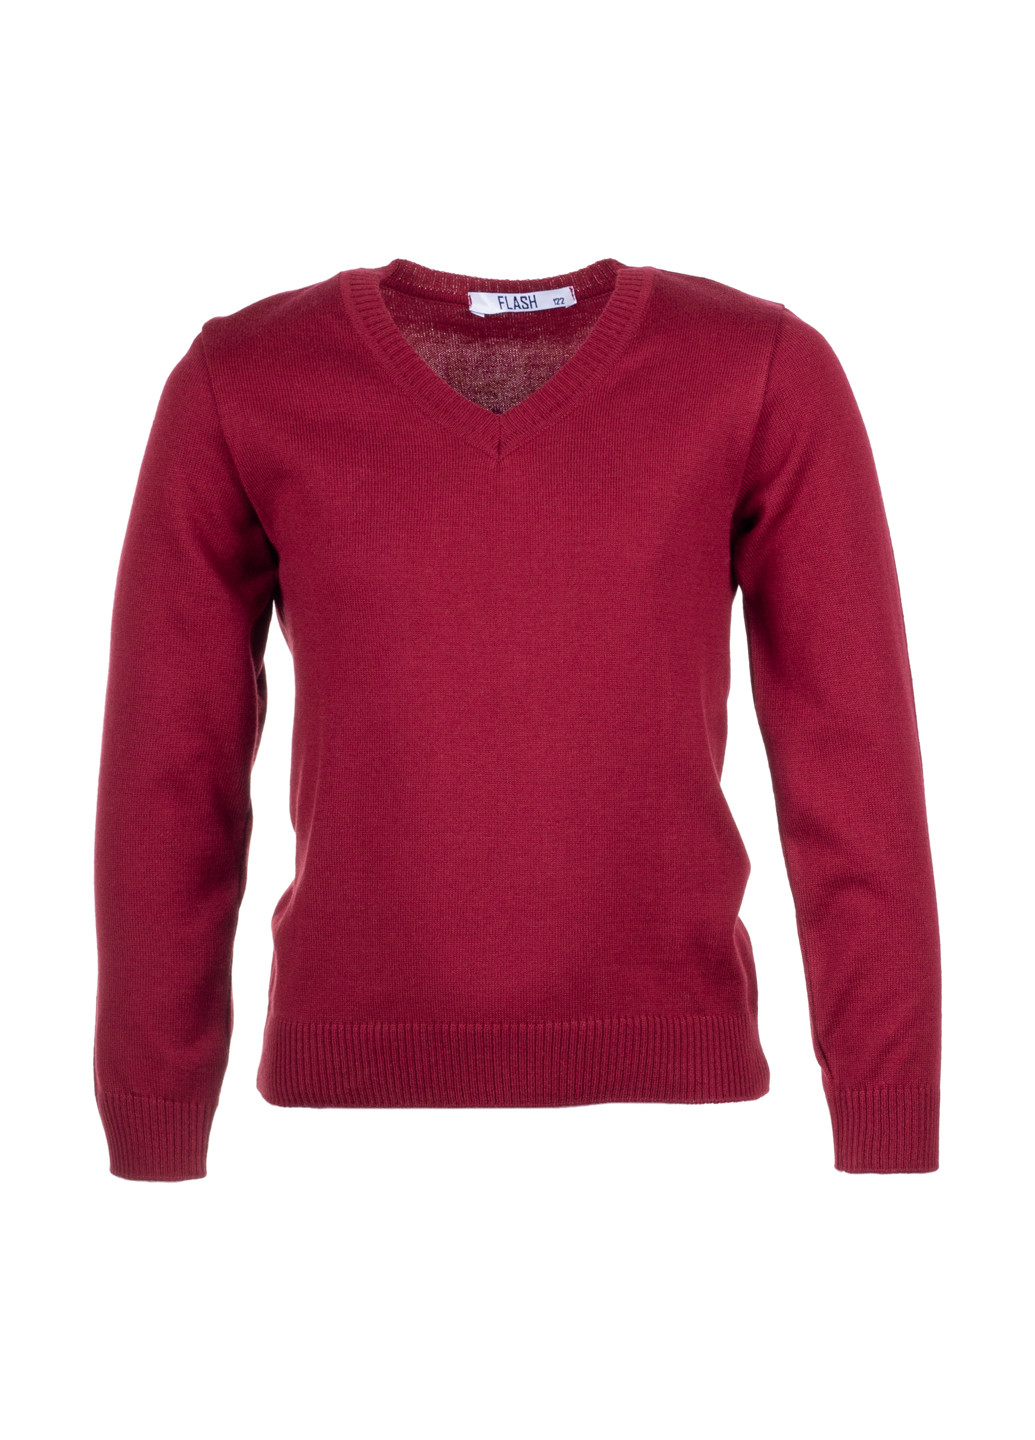 Бордовый демисезонный пуловер пуловер Flash